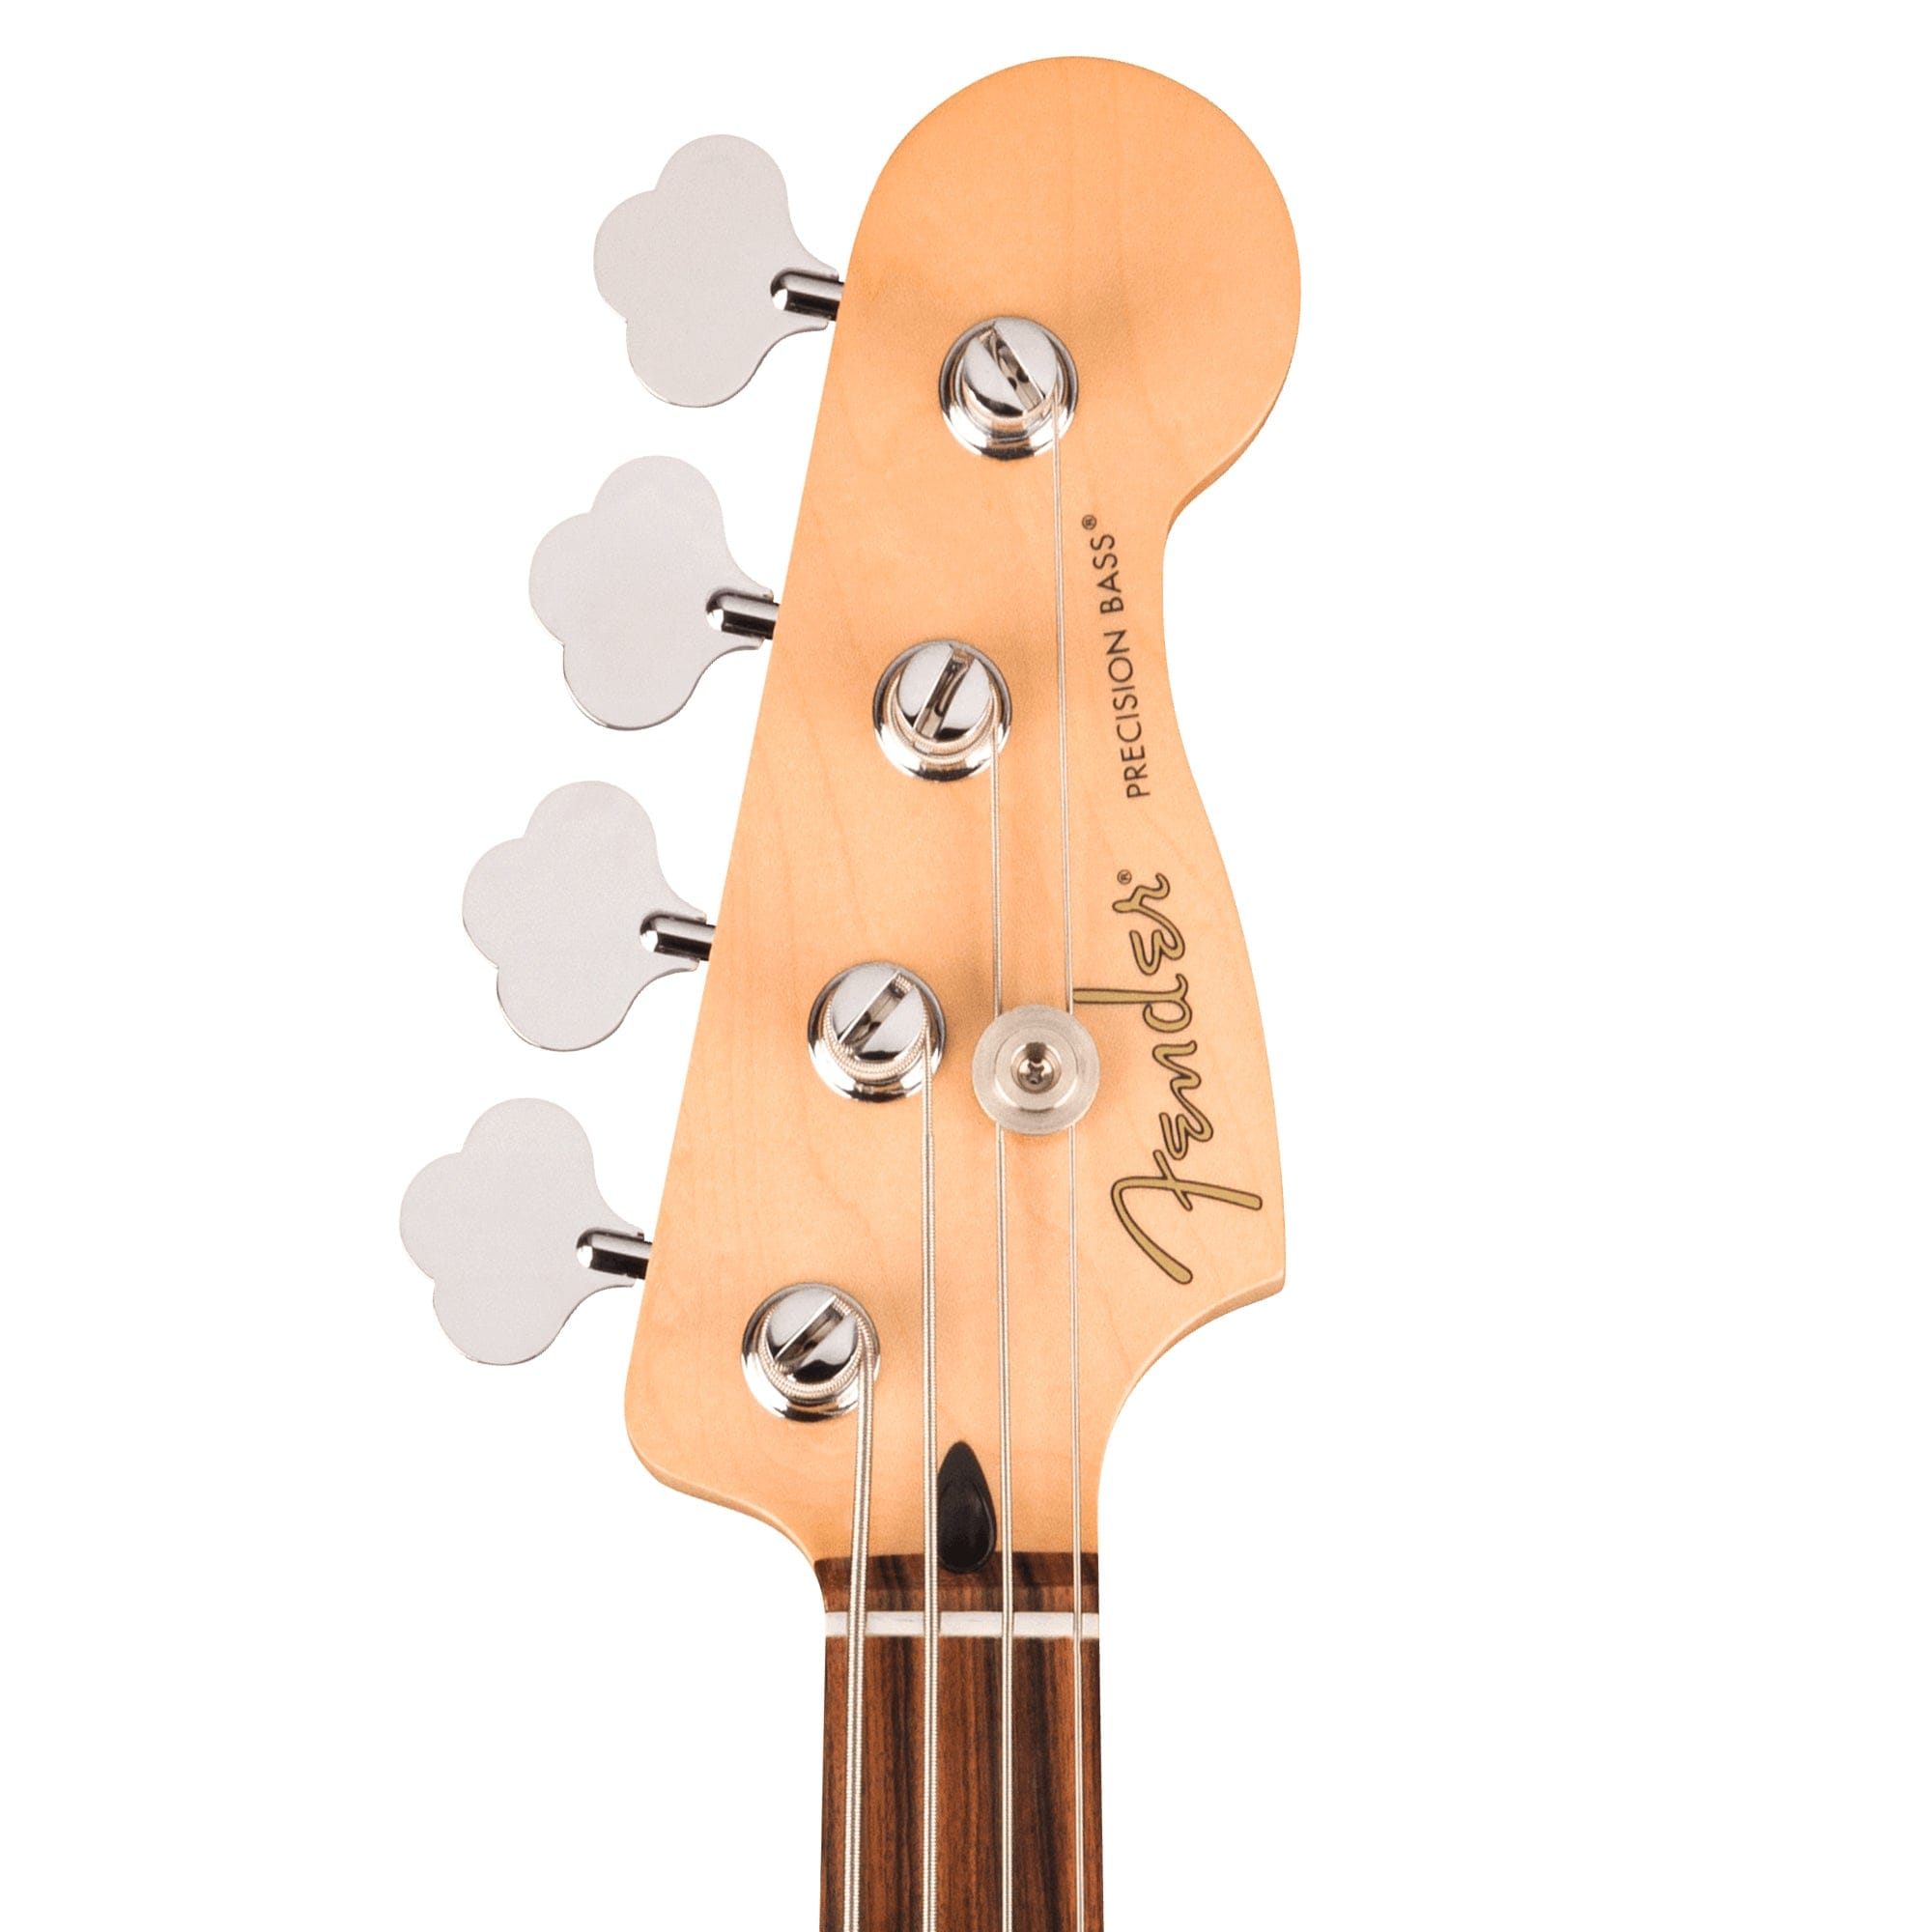 Fender Player Precision Bass Sea Foam Green Bass Guitars / 4-String